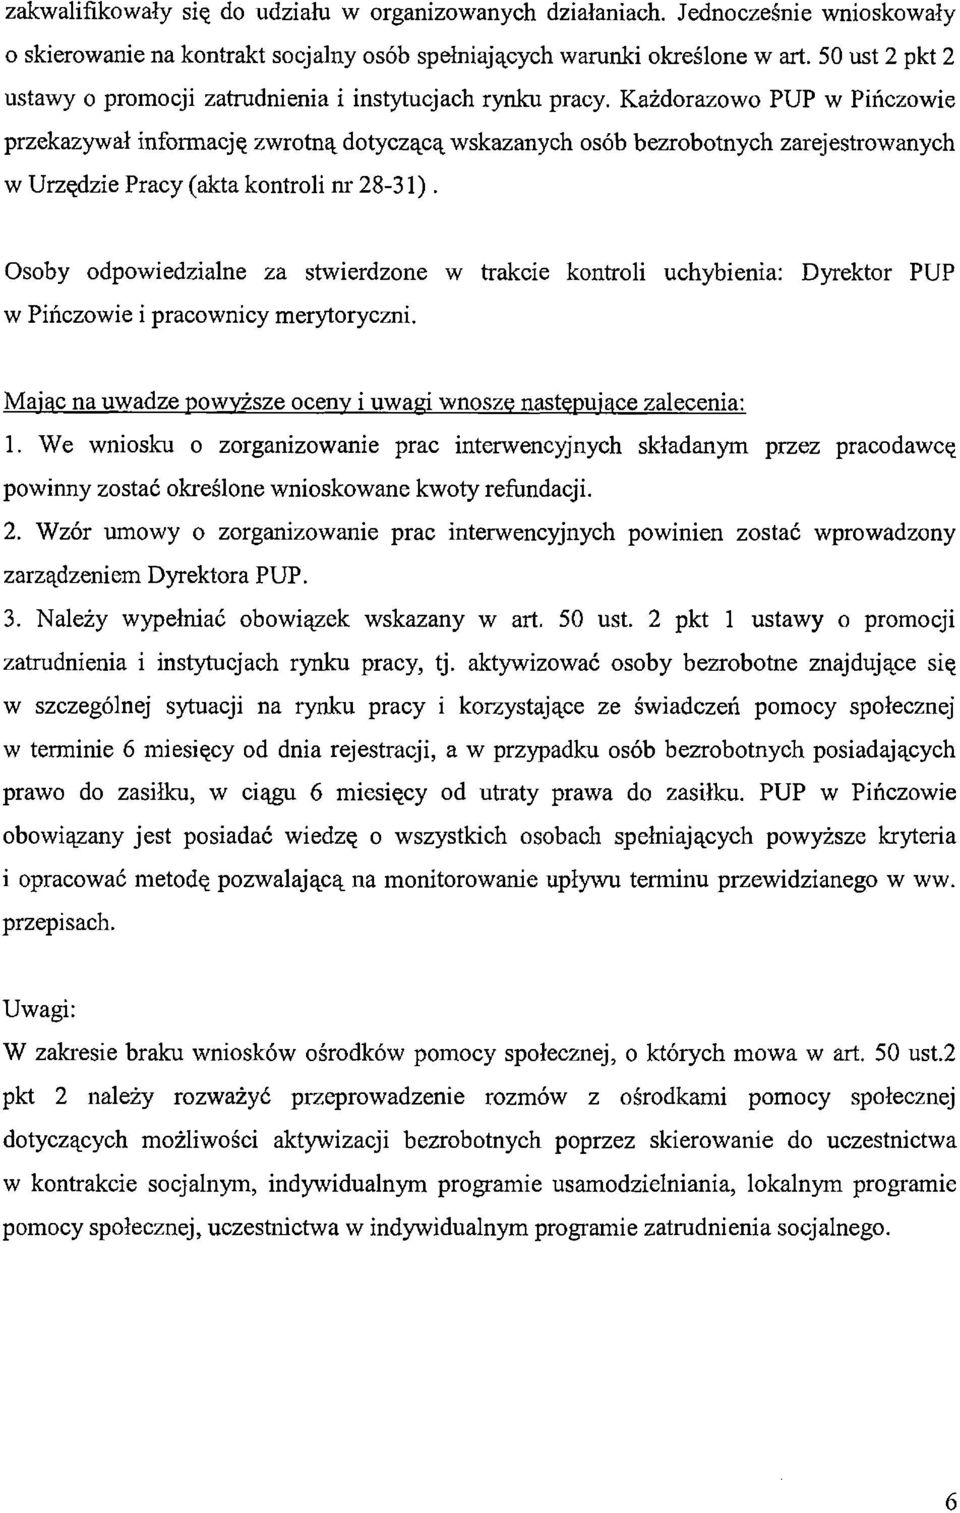 Każdorazowo PUP w Pińczowie przekazywał informację zwrotną dotyczącą wskazanych osób bezrobotnych zarejestrowanych w Urzędzie Pracy (akta kontroli nr 28-31).